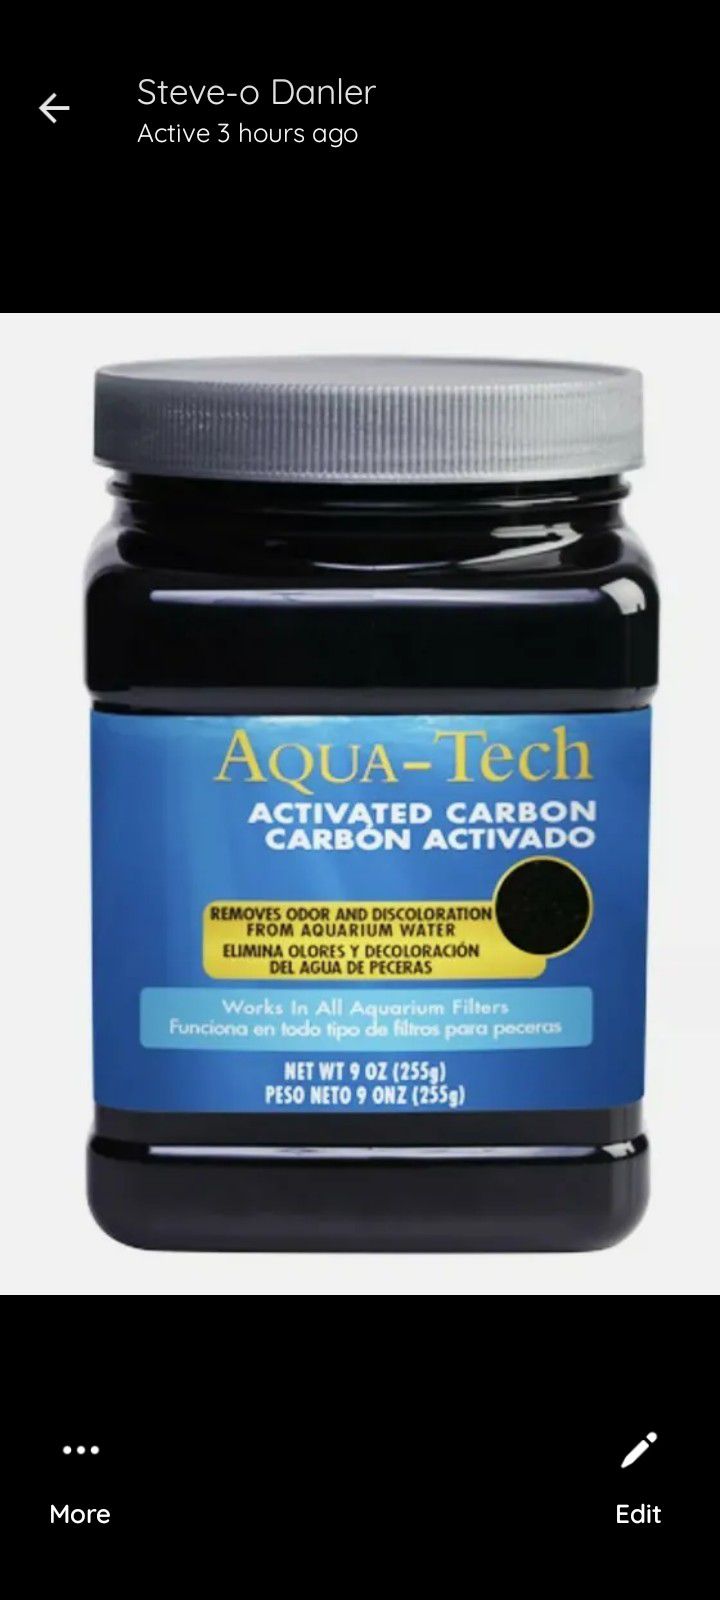 2x Aqua-Tech Activated
Carbon 9 oz Removes Odor/
Discoloration Aquarium Water
NEW